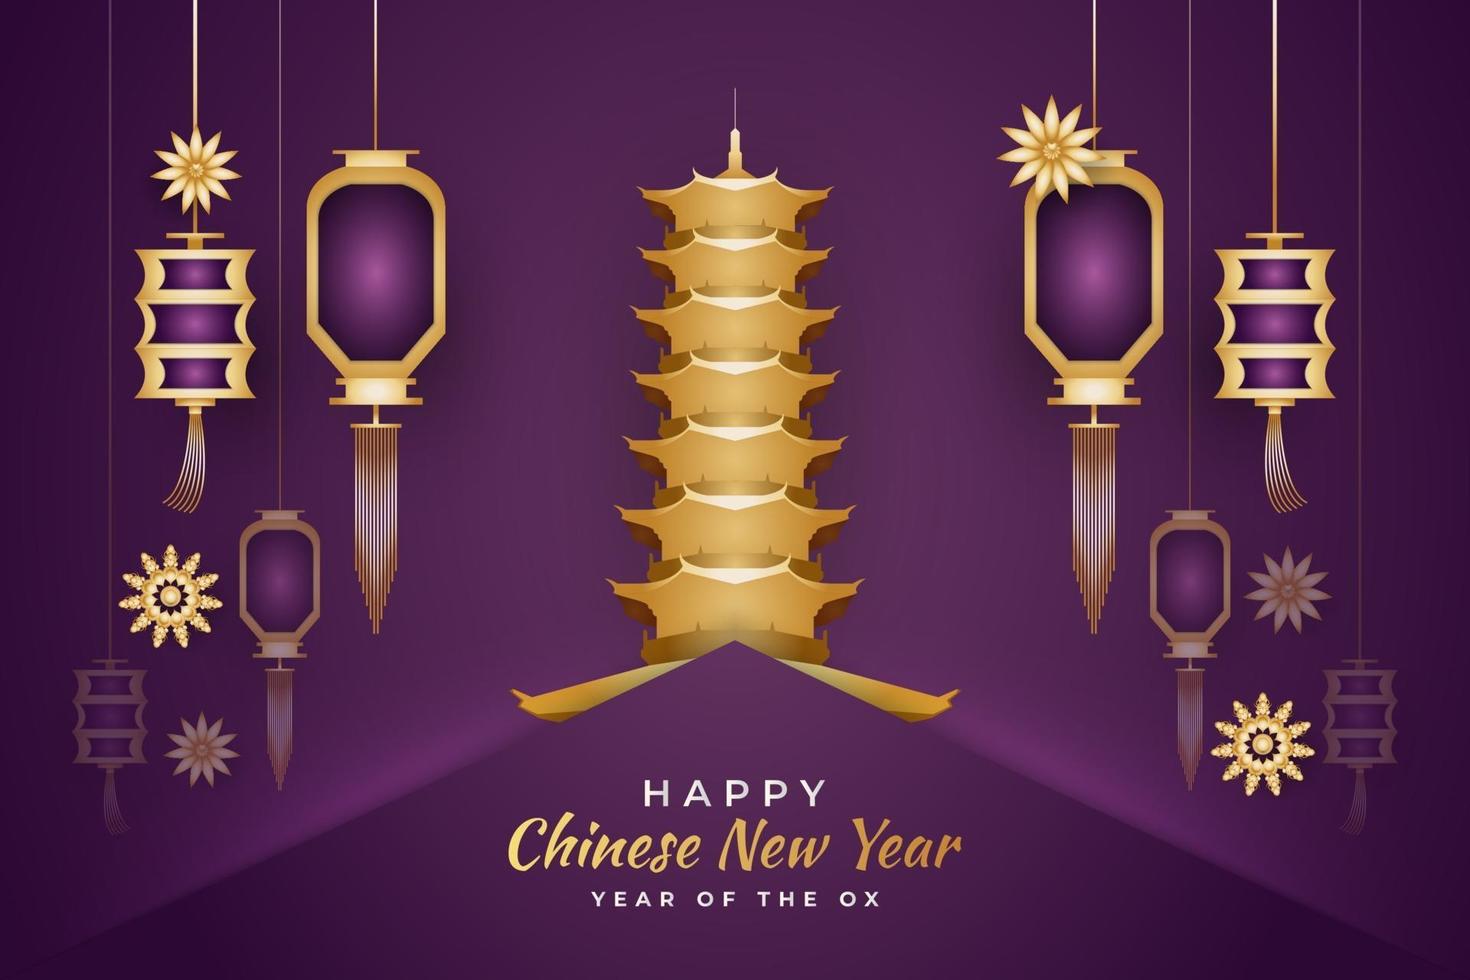 feliz ano novo chinês 2021 ano do boi, pagode dourado e lanternas no conceito de corte de papel no fundo roxo vetor